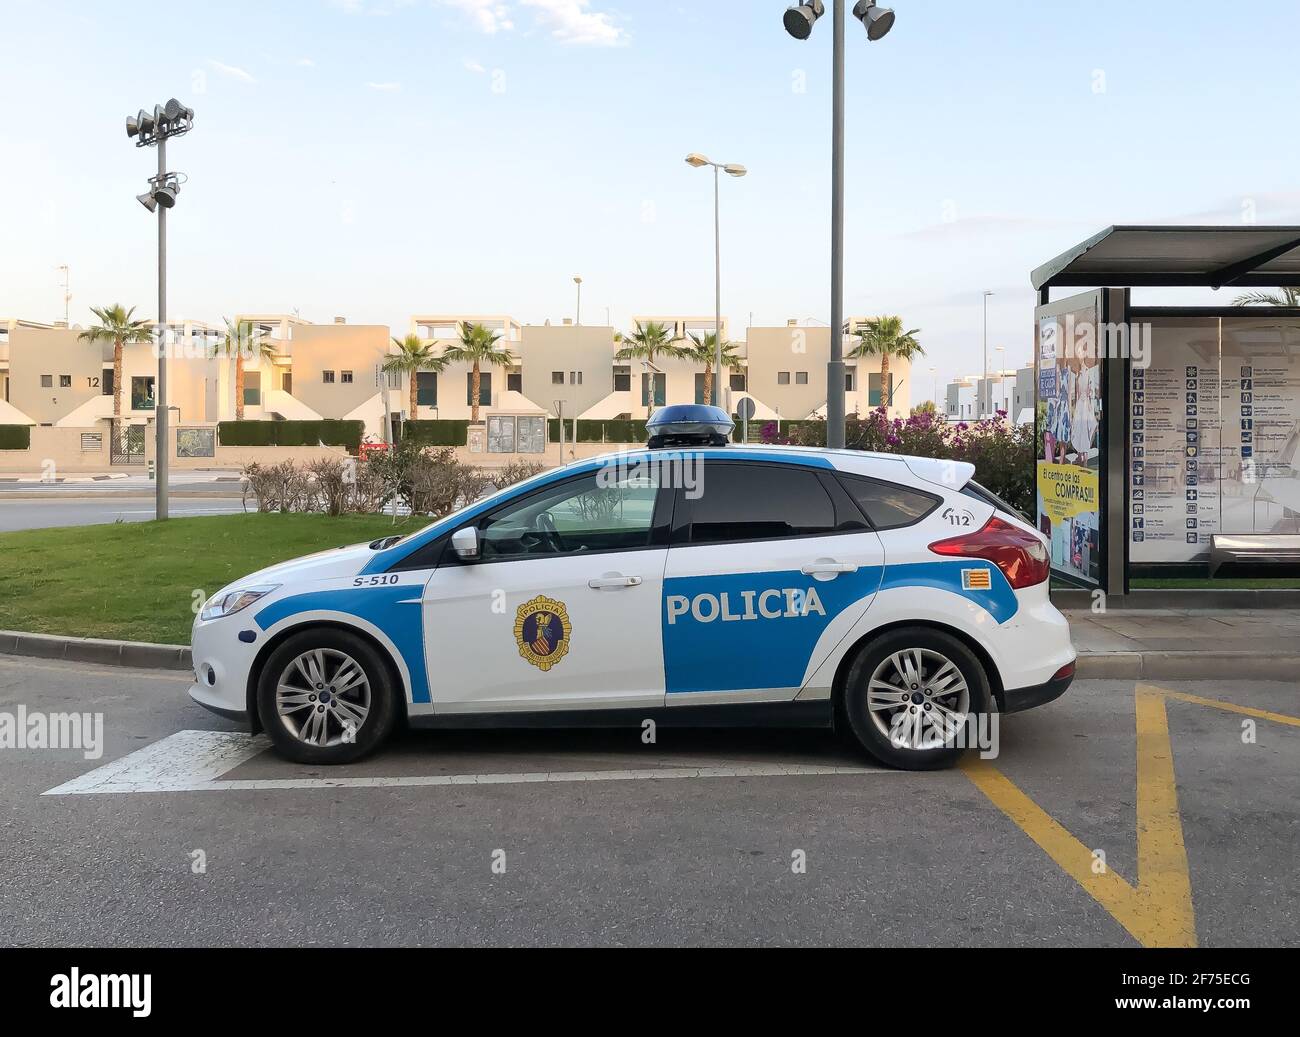 Alicante, Spagna - Aprile 2021: Auto della polizia locale parcheggiata vicino al centro commerciale Zenia Boluevard, fermata dell'autobus nell'area urbana Foto Stock